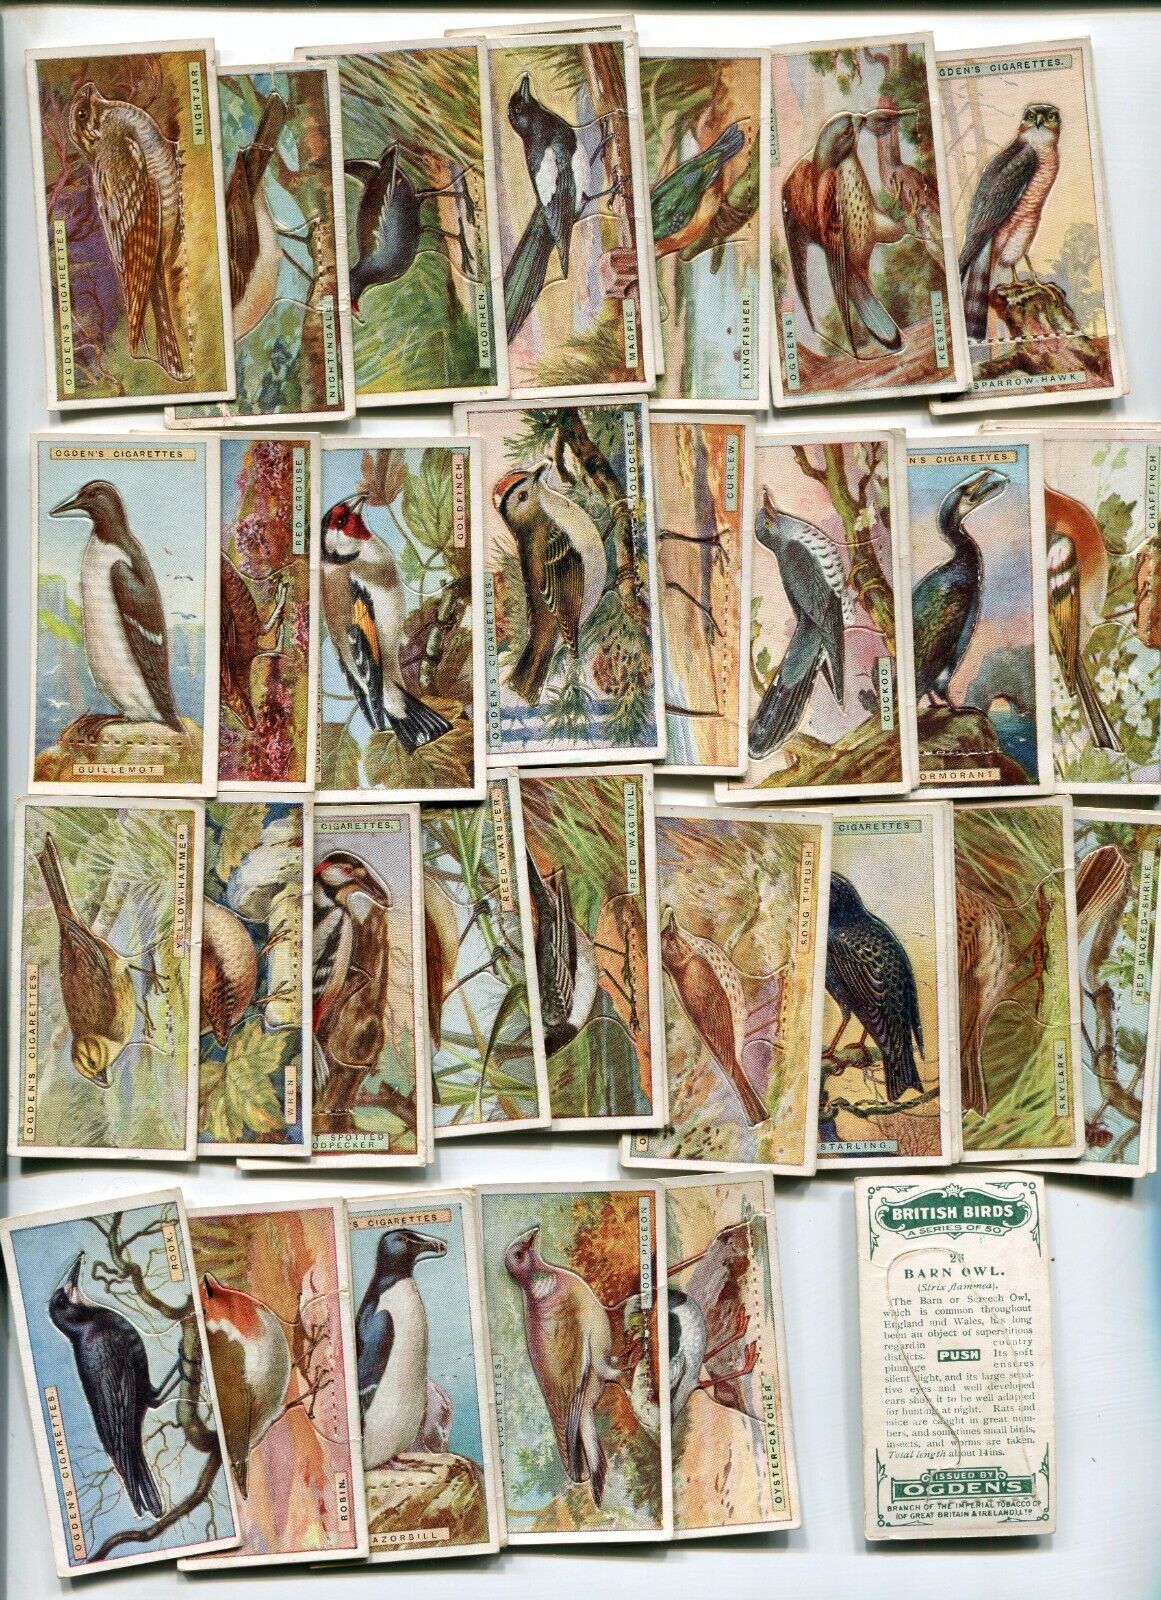 1923 OGDEN'S CIGARETTES BRITISH BIRDS STAND-UPS COMPLETE 50 TOBACCO CARD SET